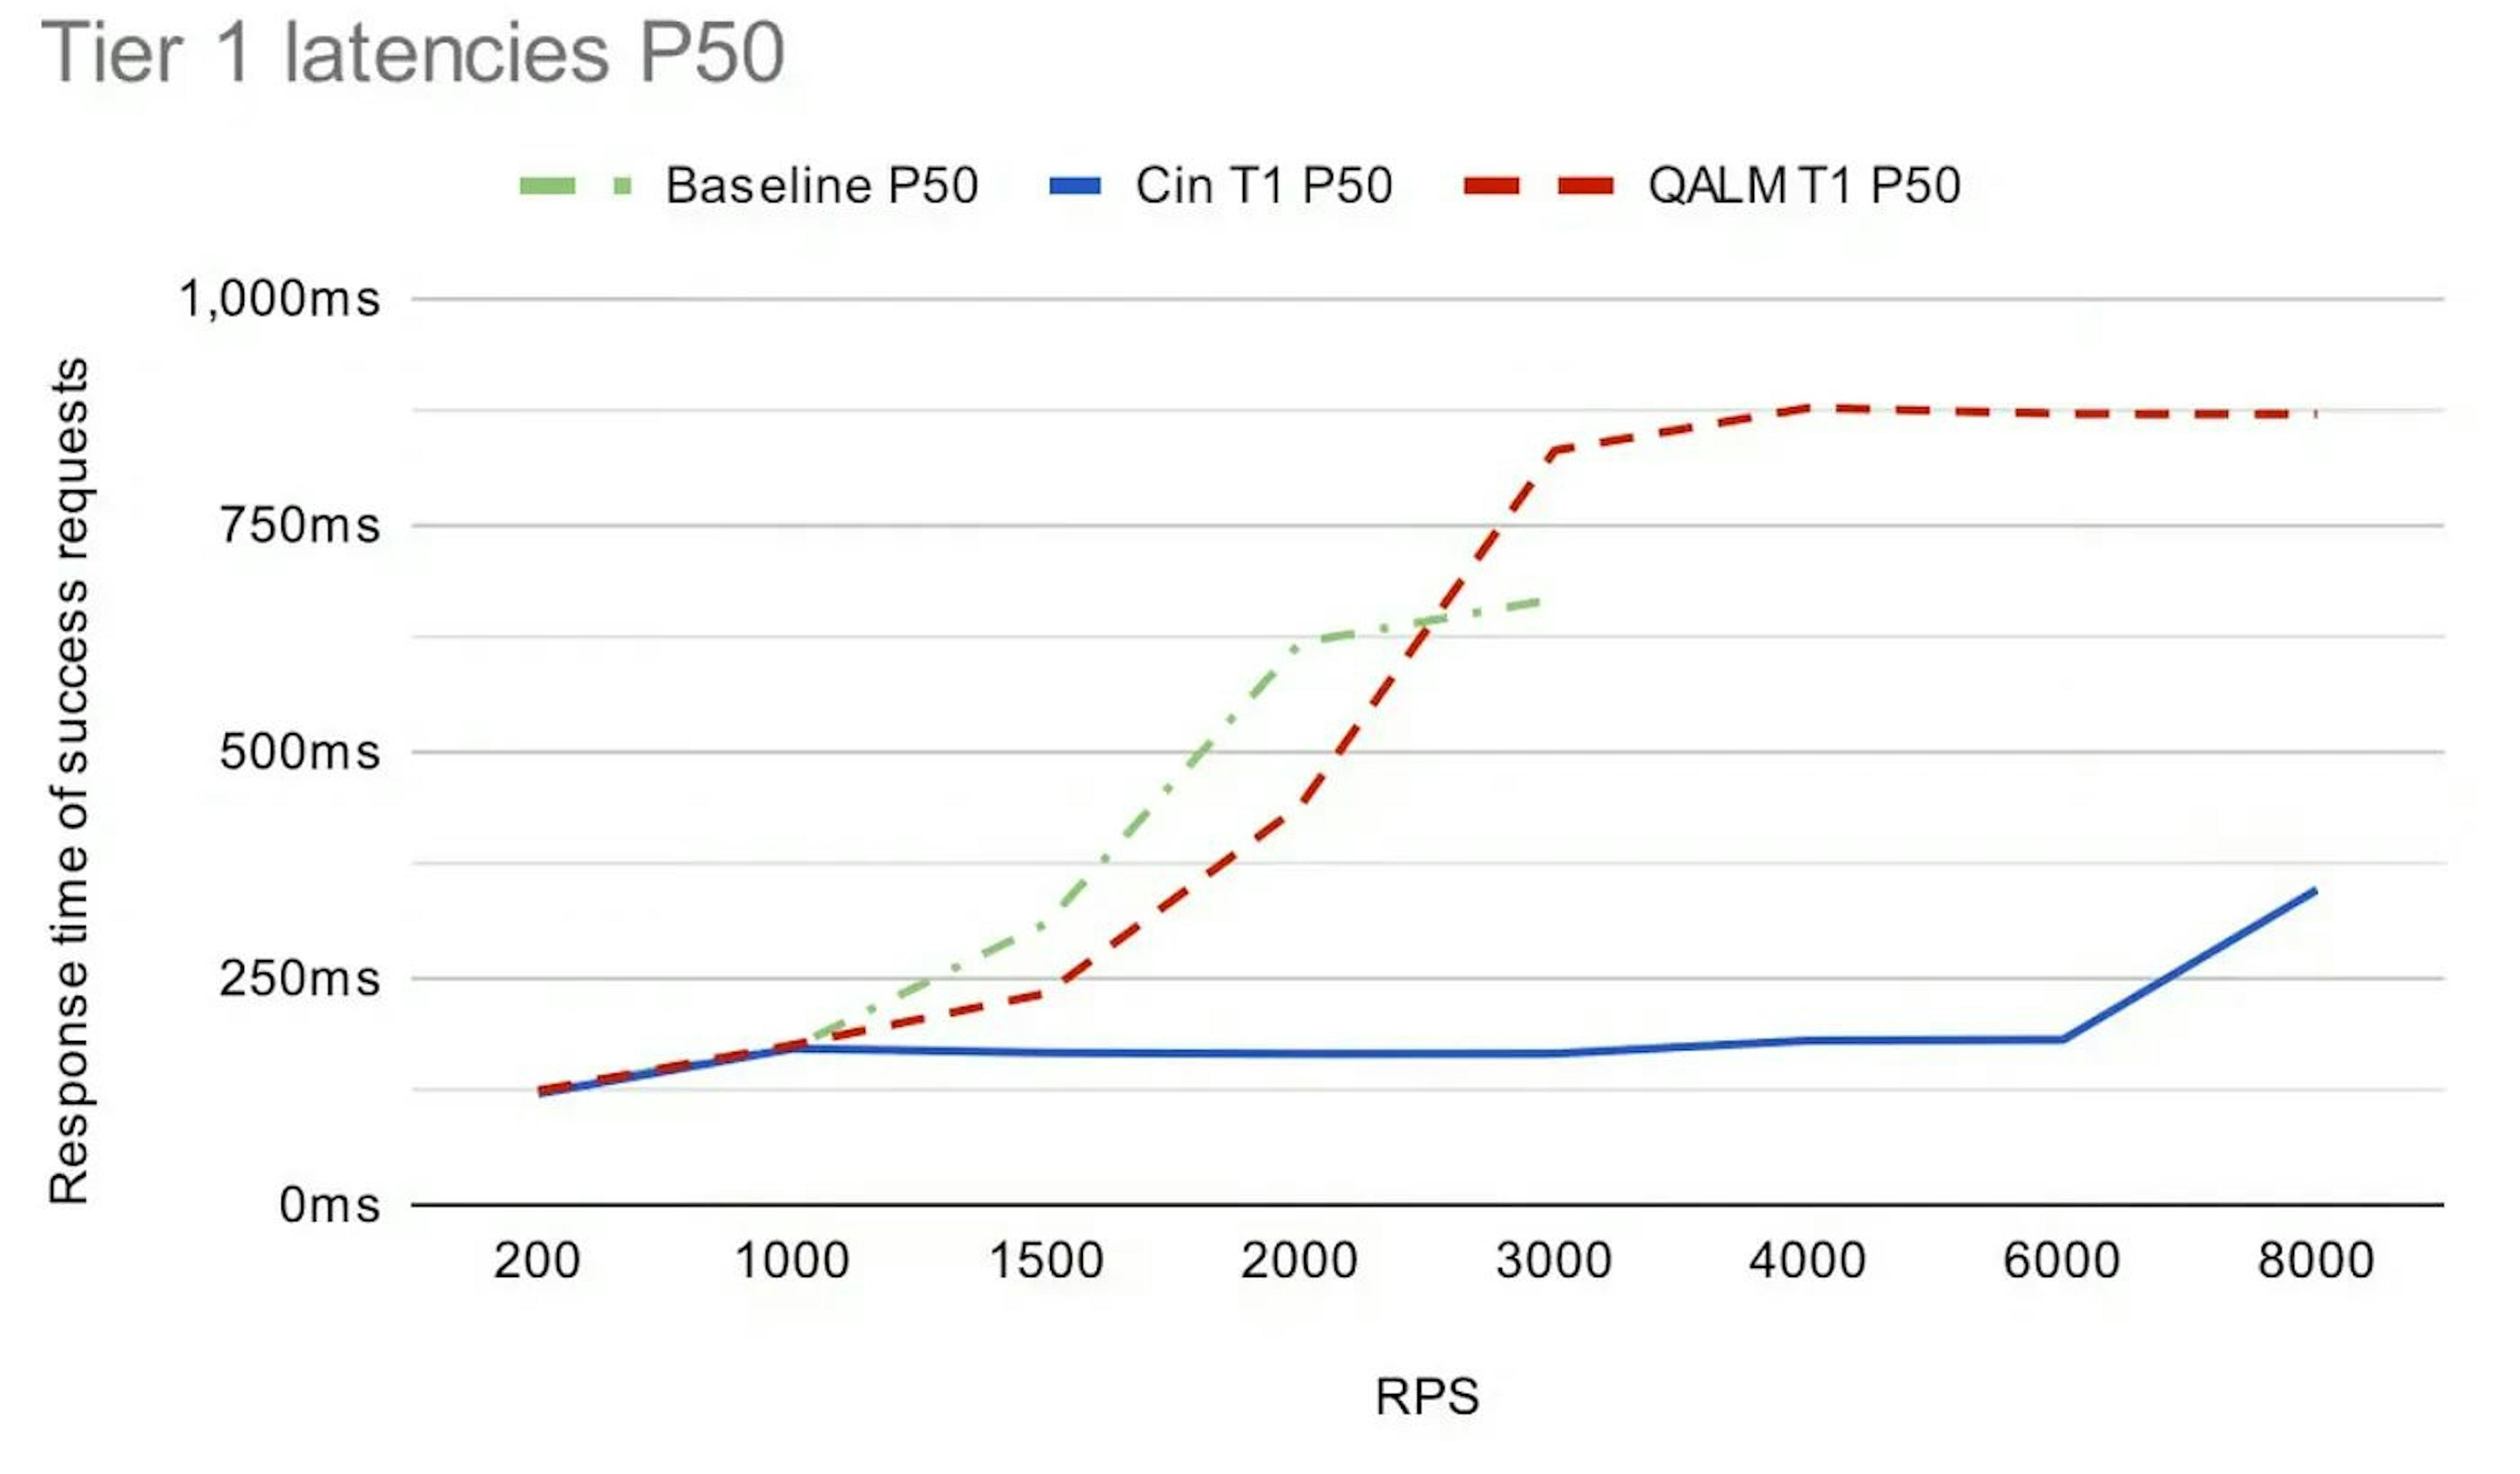 서로 다른 인바운드 RPS에서 세 가지 설정에 대한 높은 우선순위, 계층 1 요청에 대한 P50 대기 시간입니다. (앞서 언급한 Uber 기사에서 발췌)